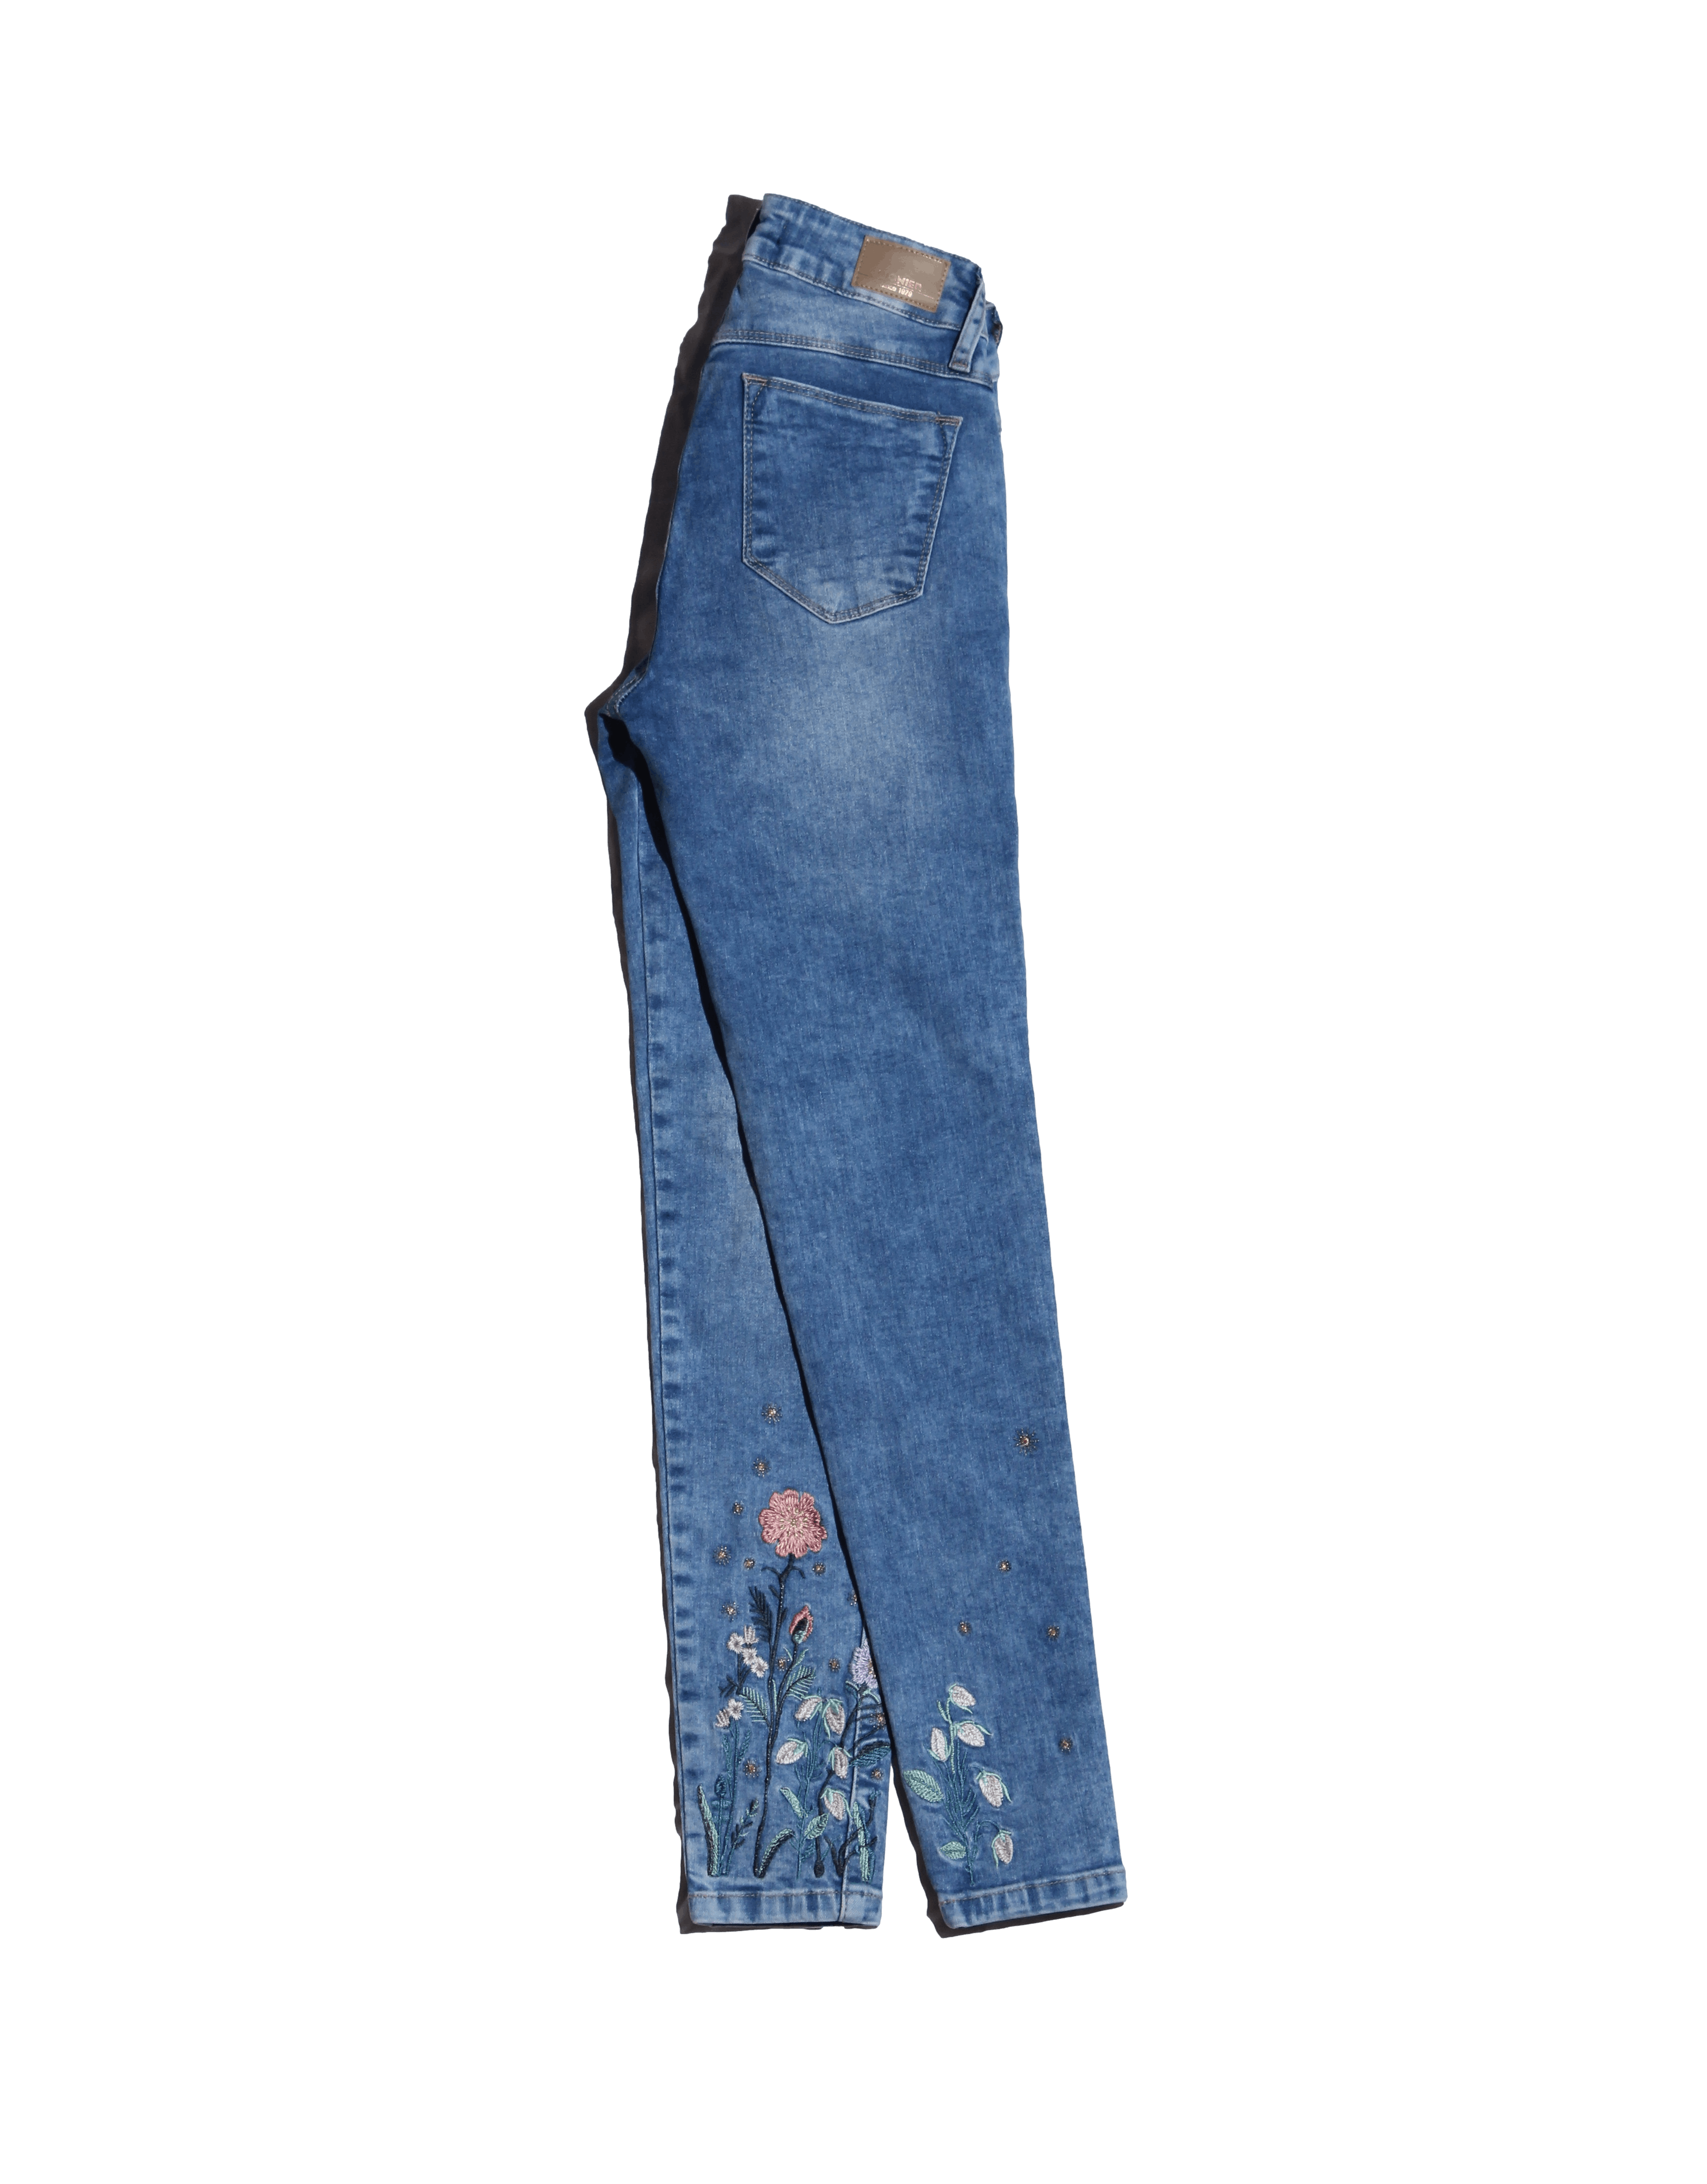 Skinny jean Pioner celeste con bolsillos, cierre y botón delanteros, bolsillos posteriores y bordados florales en la basta Cintura 60 cm Largo 90 cm